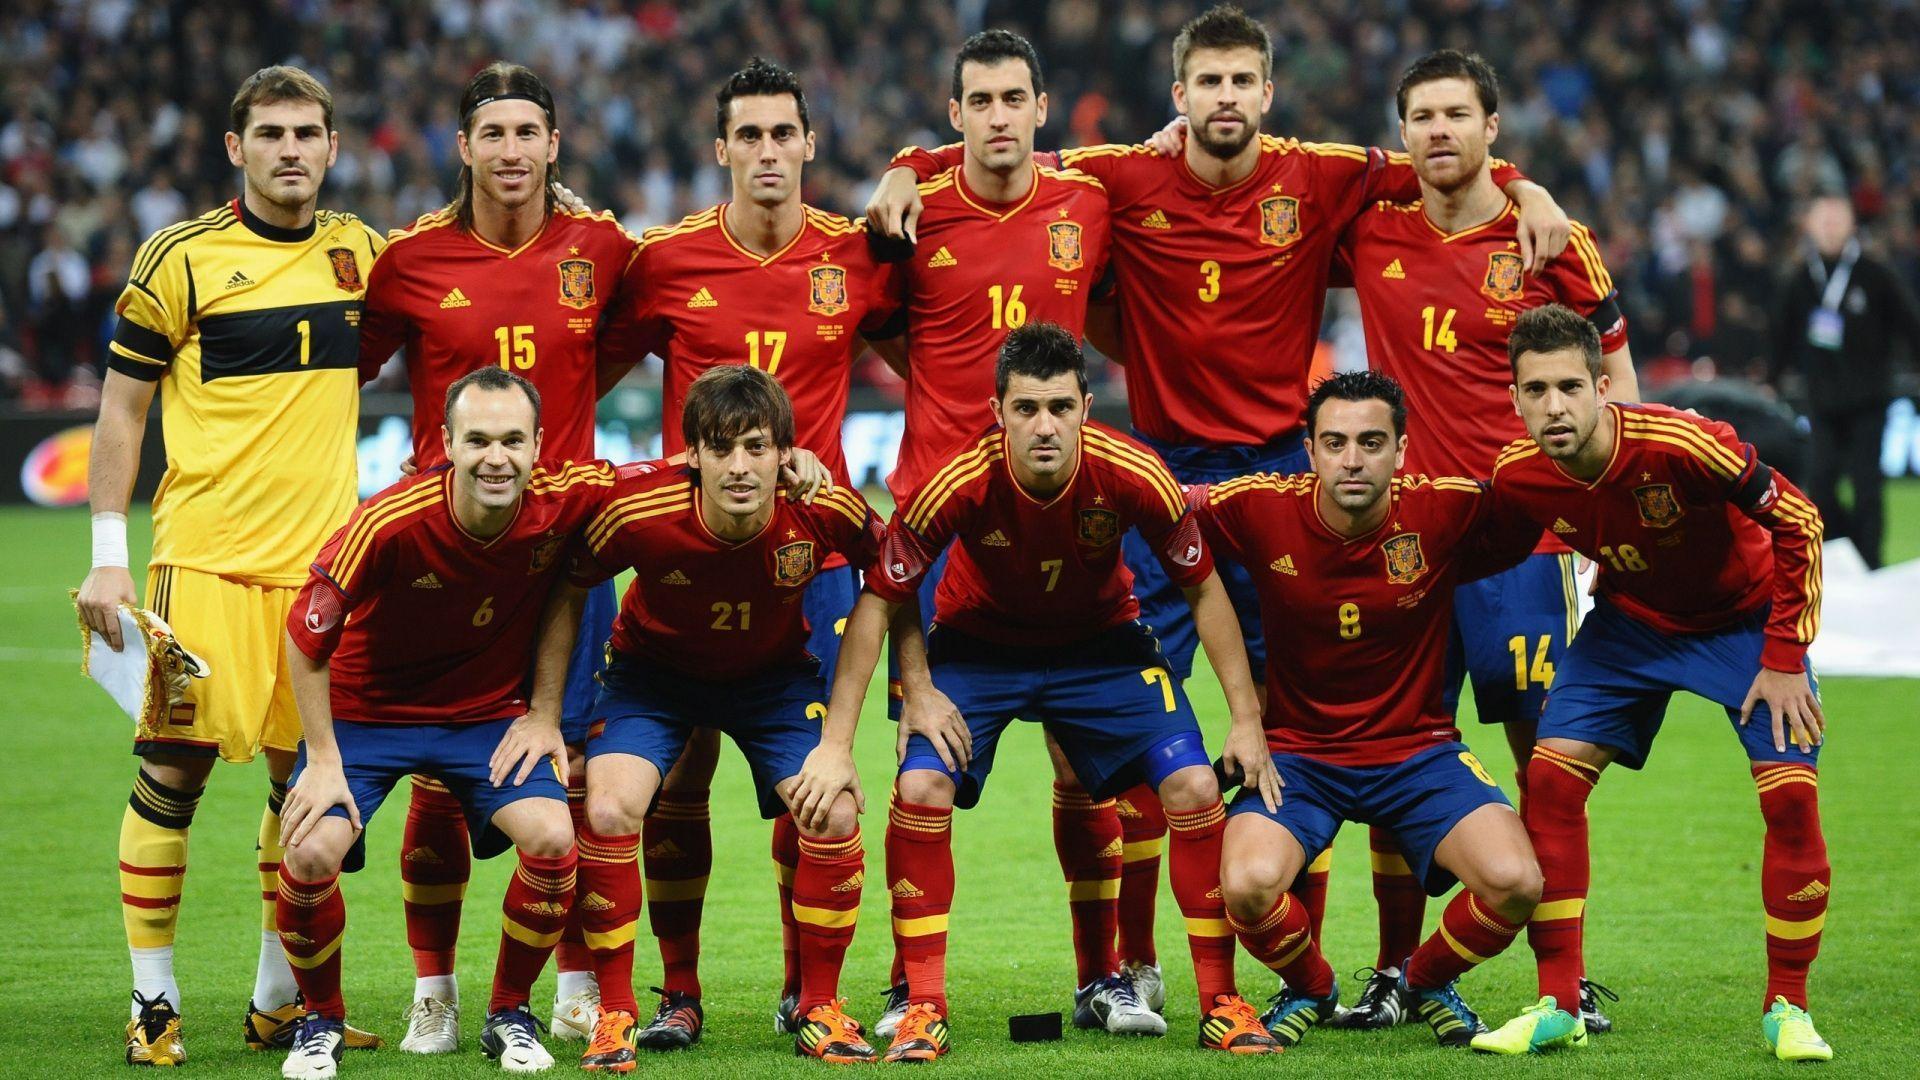 Spain Football Team Best Wallpapers